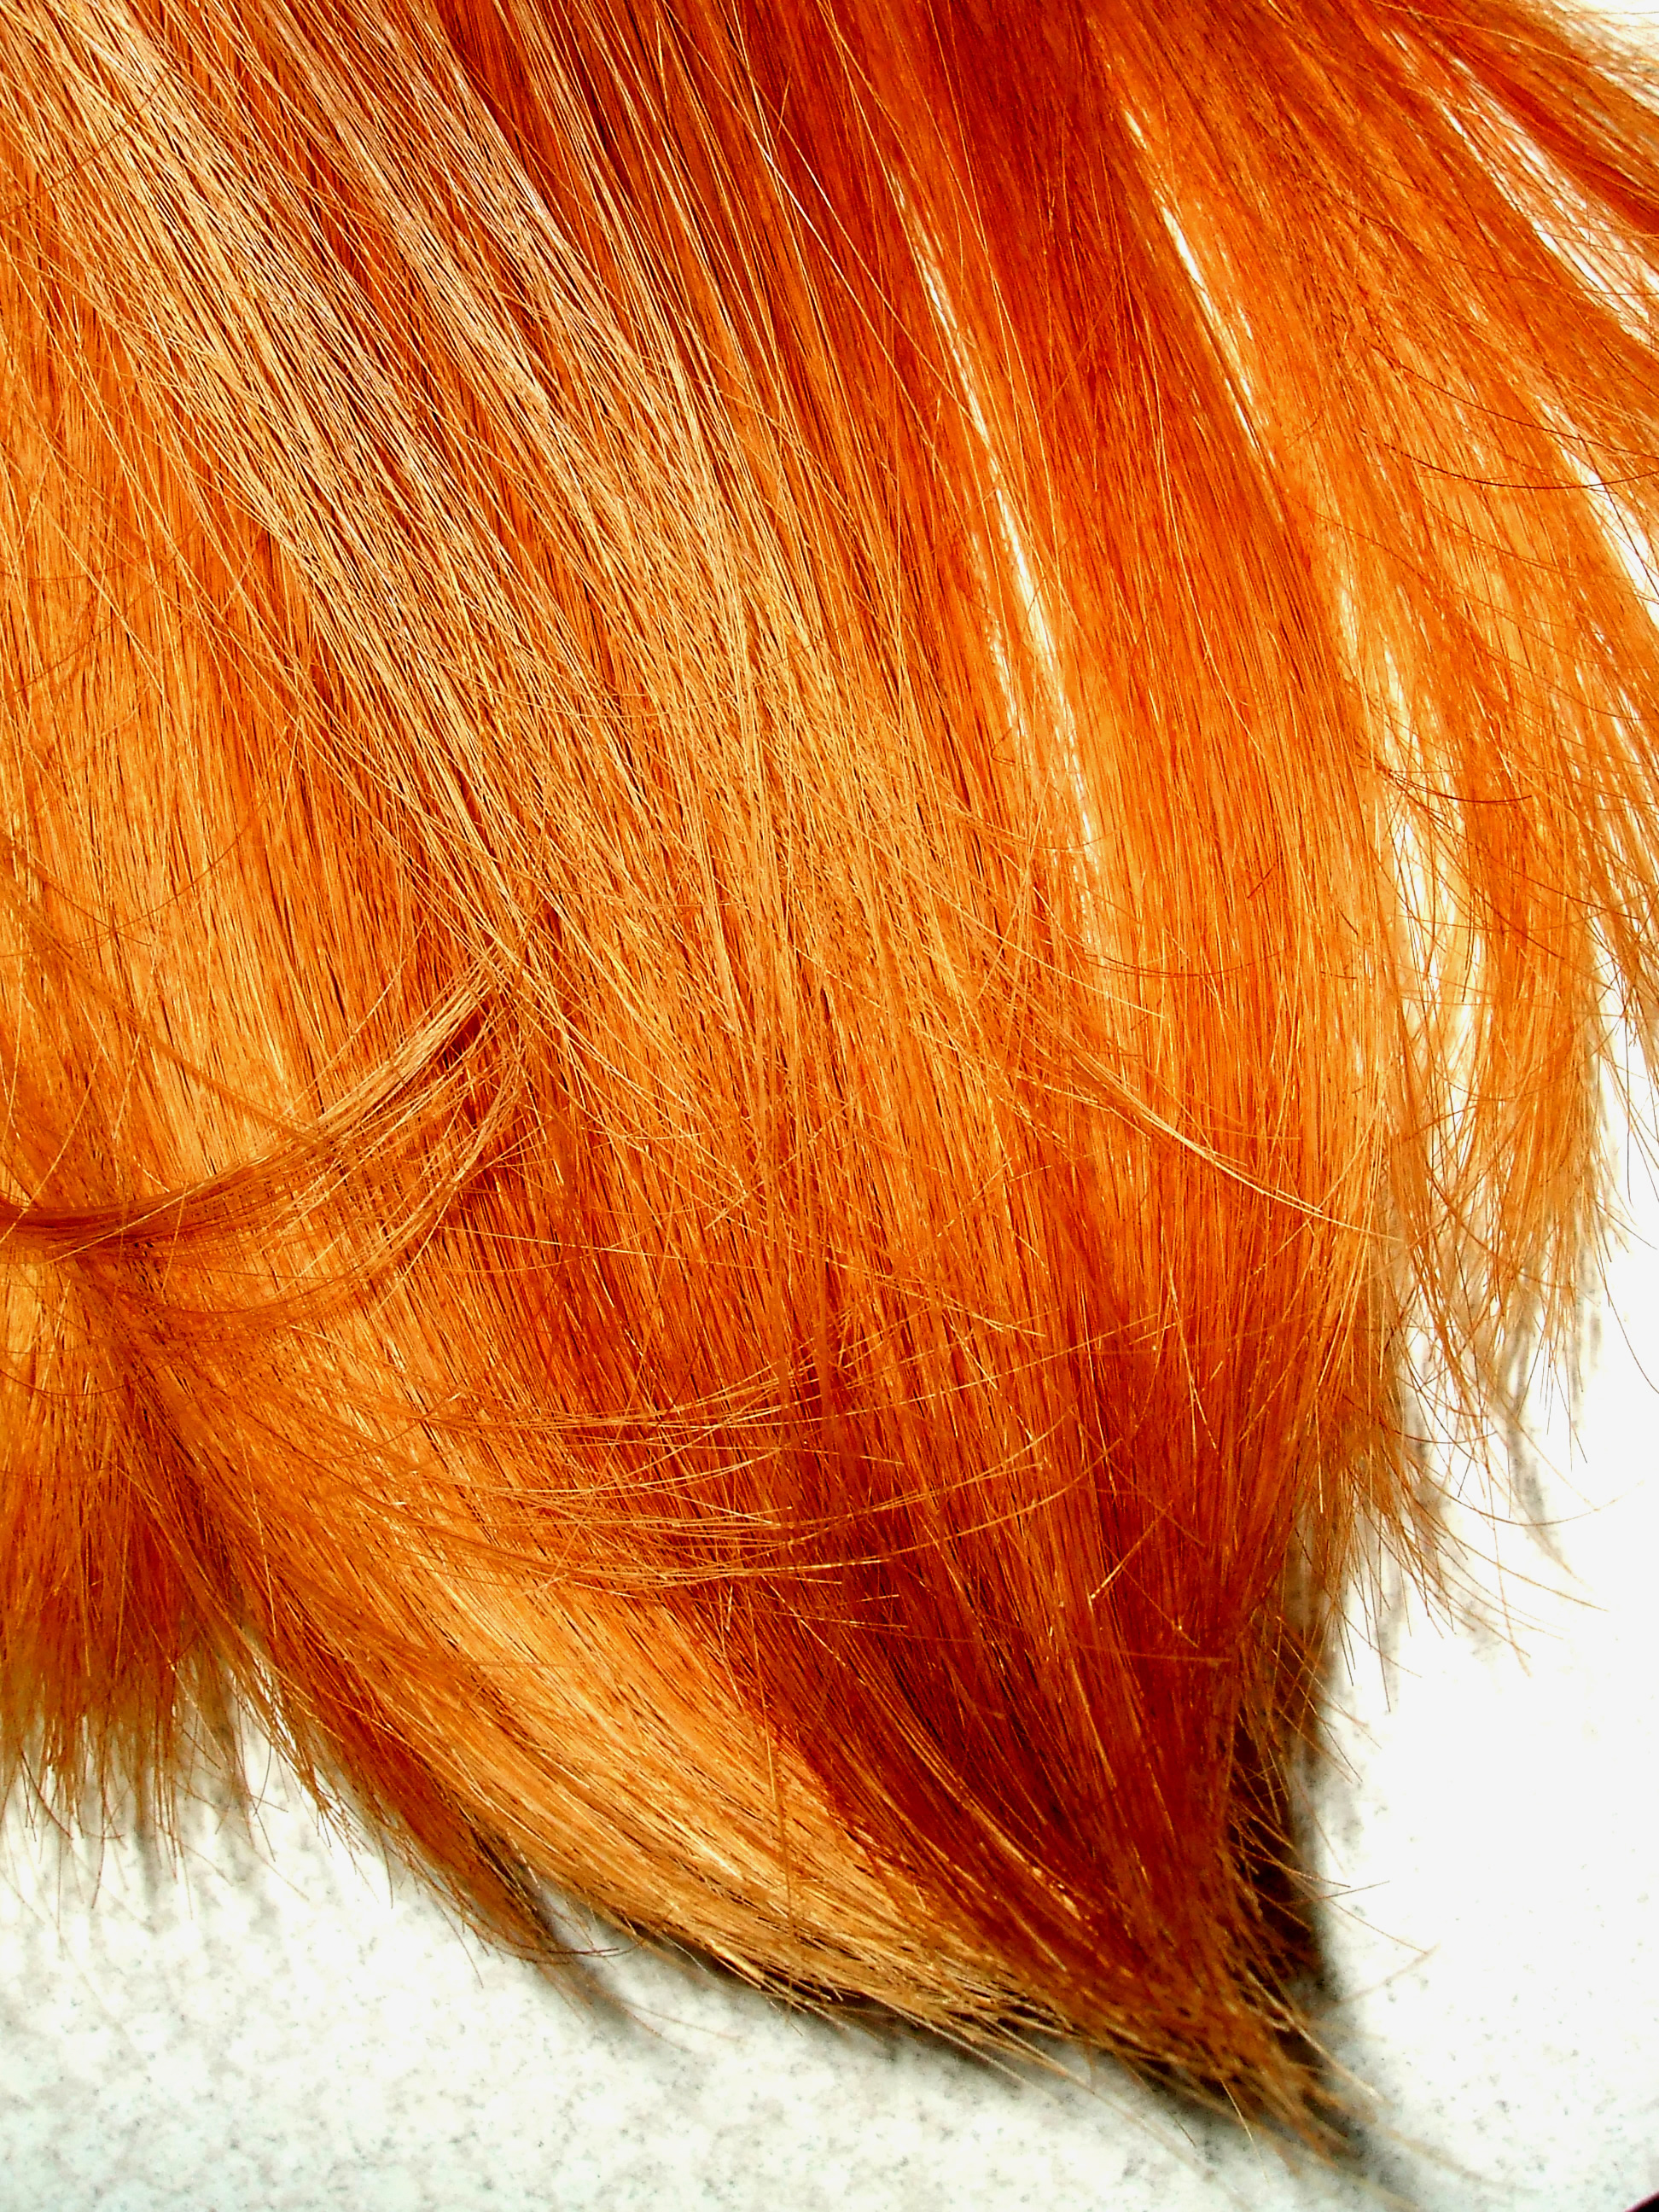 огненные, ярко-рыжие волосы, текстура, фон, orange hair texture, background